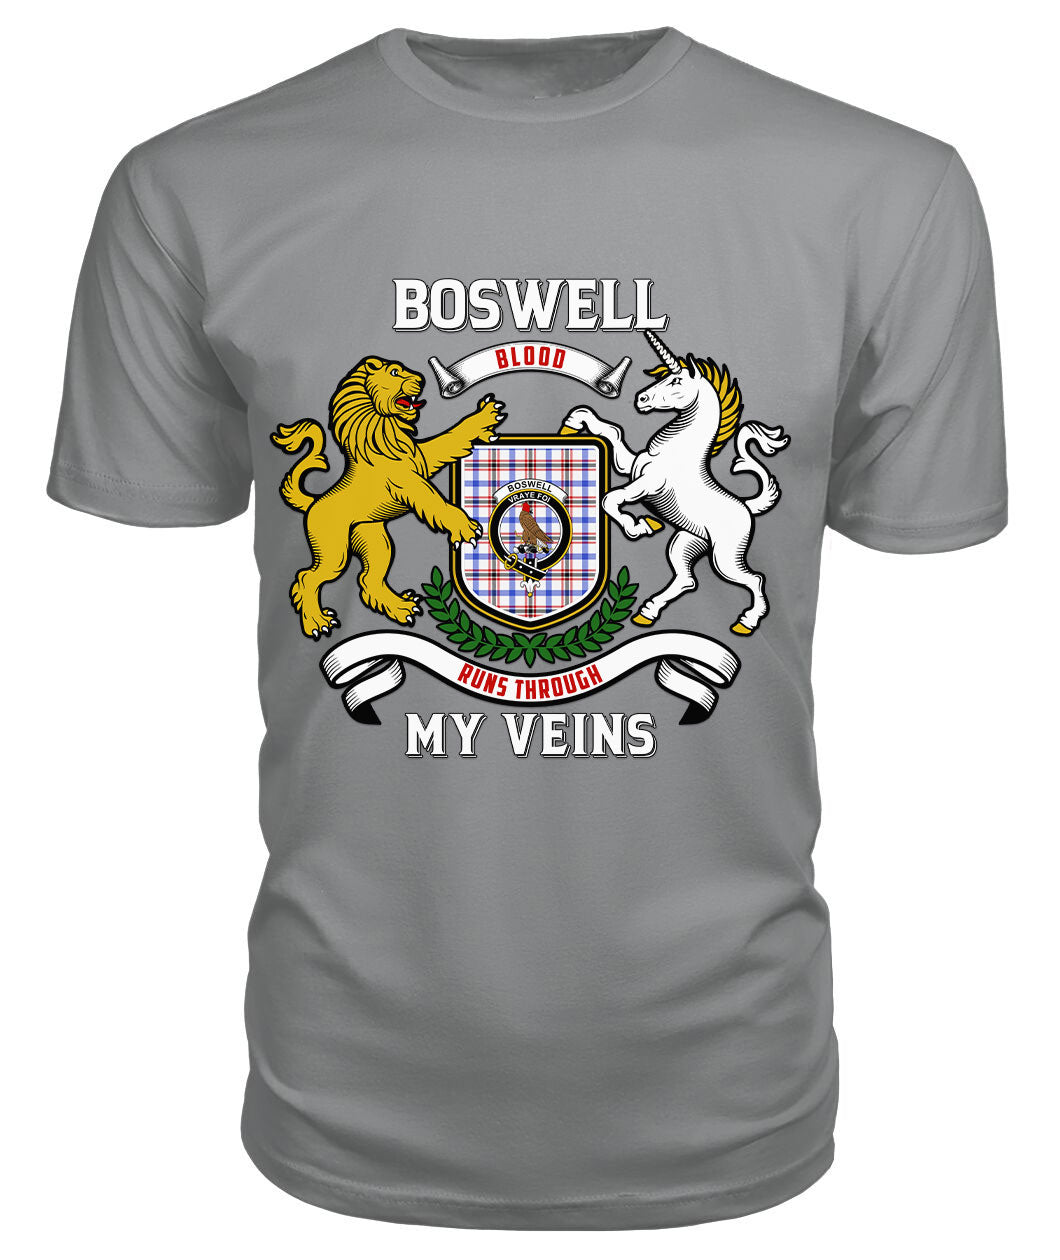 Boswell Modern Tartan Crest 2D T-shirt - Blood Runs Through My Veins Style